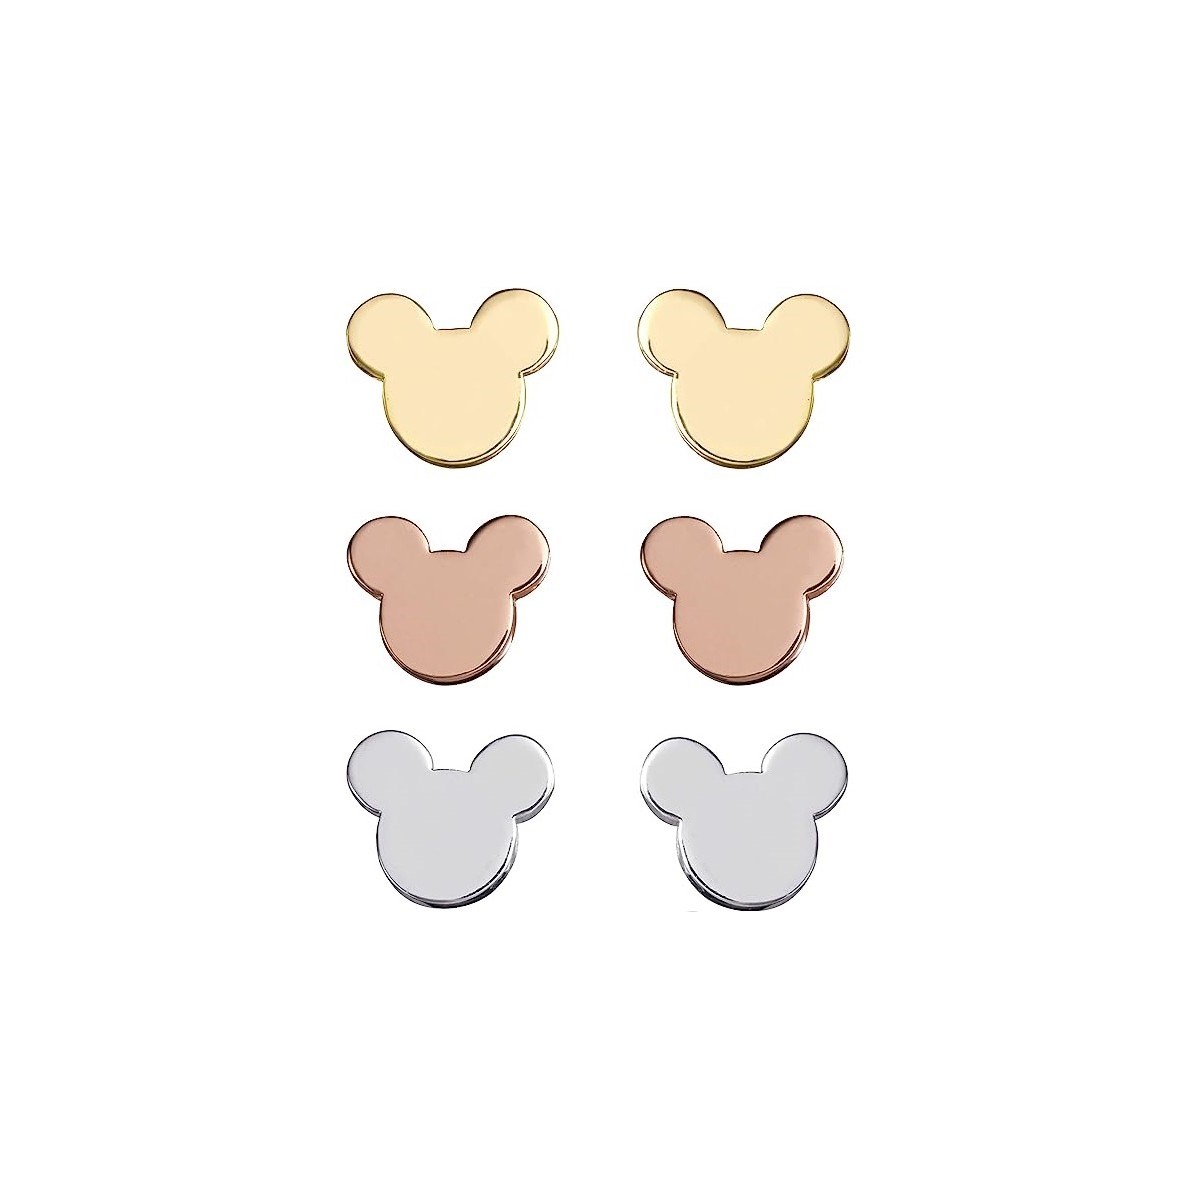 Lot de 3 paires de boucles d'oreilles Disney - Mickey